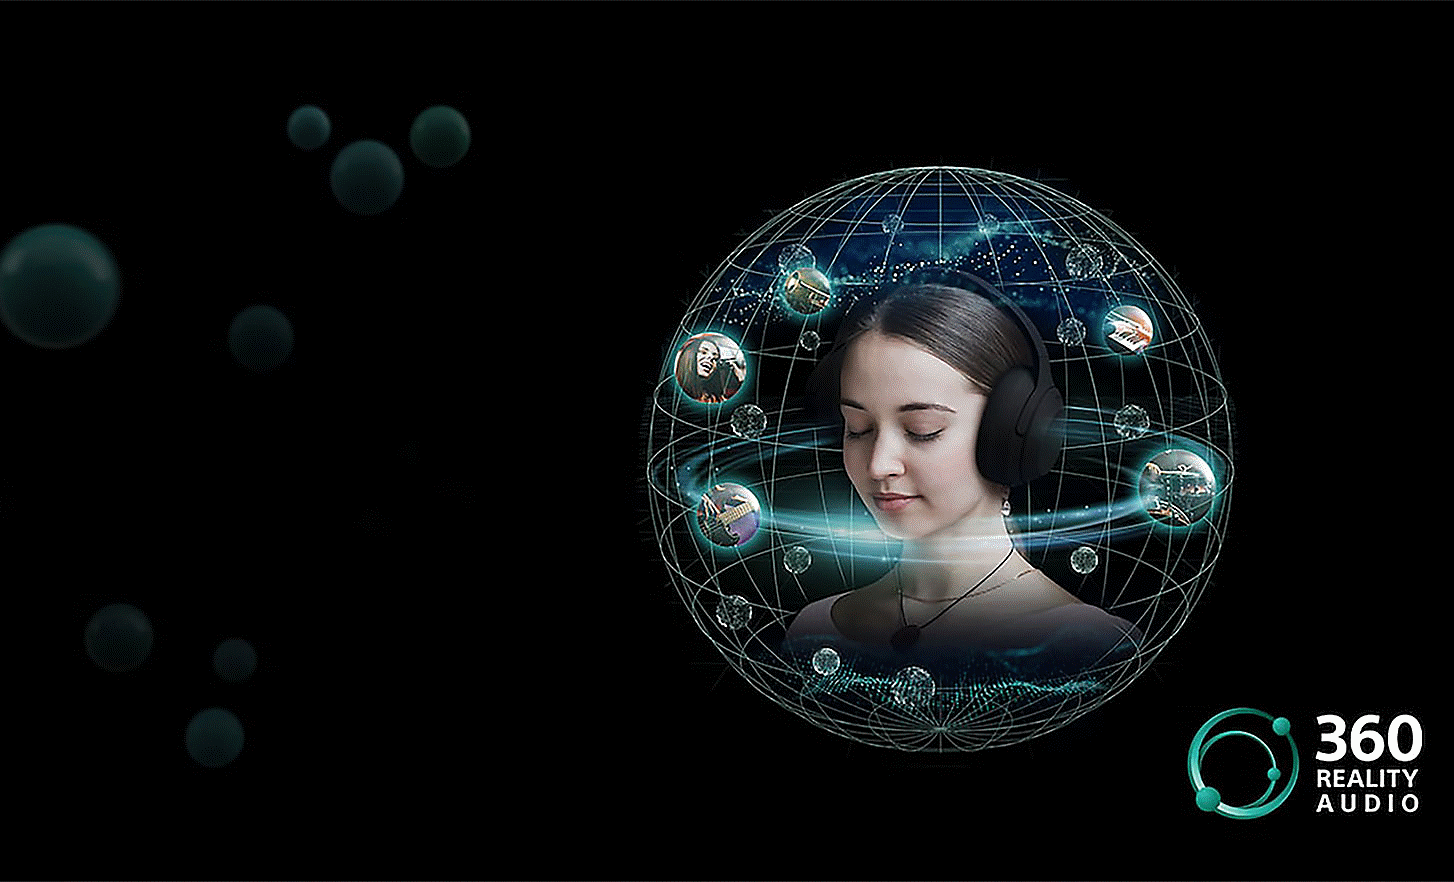 Image d'une personne portant les écouteurs, entourée de bulles de son dans un filet circulaire, avec le logo 360 Reality Audio sur la droite